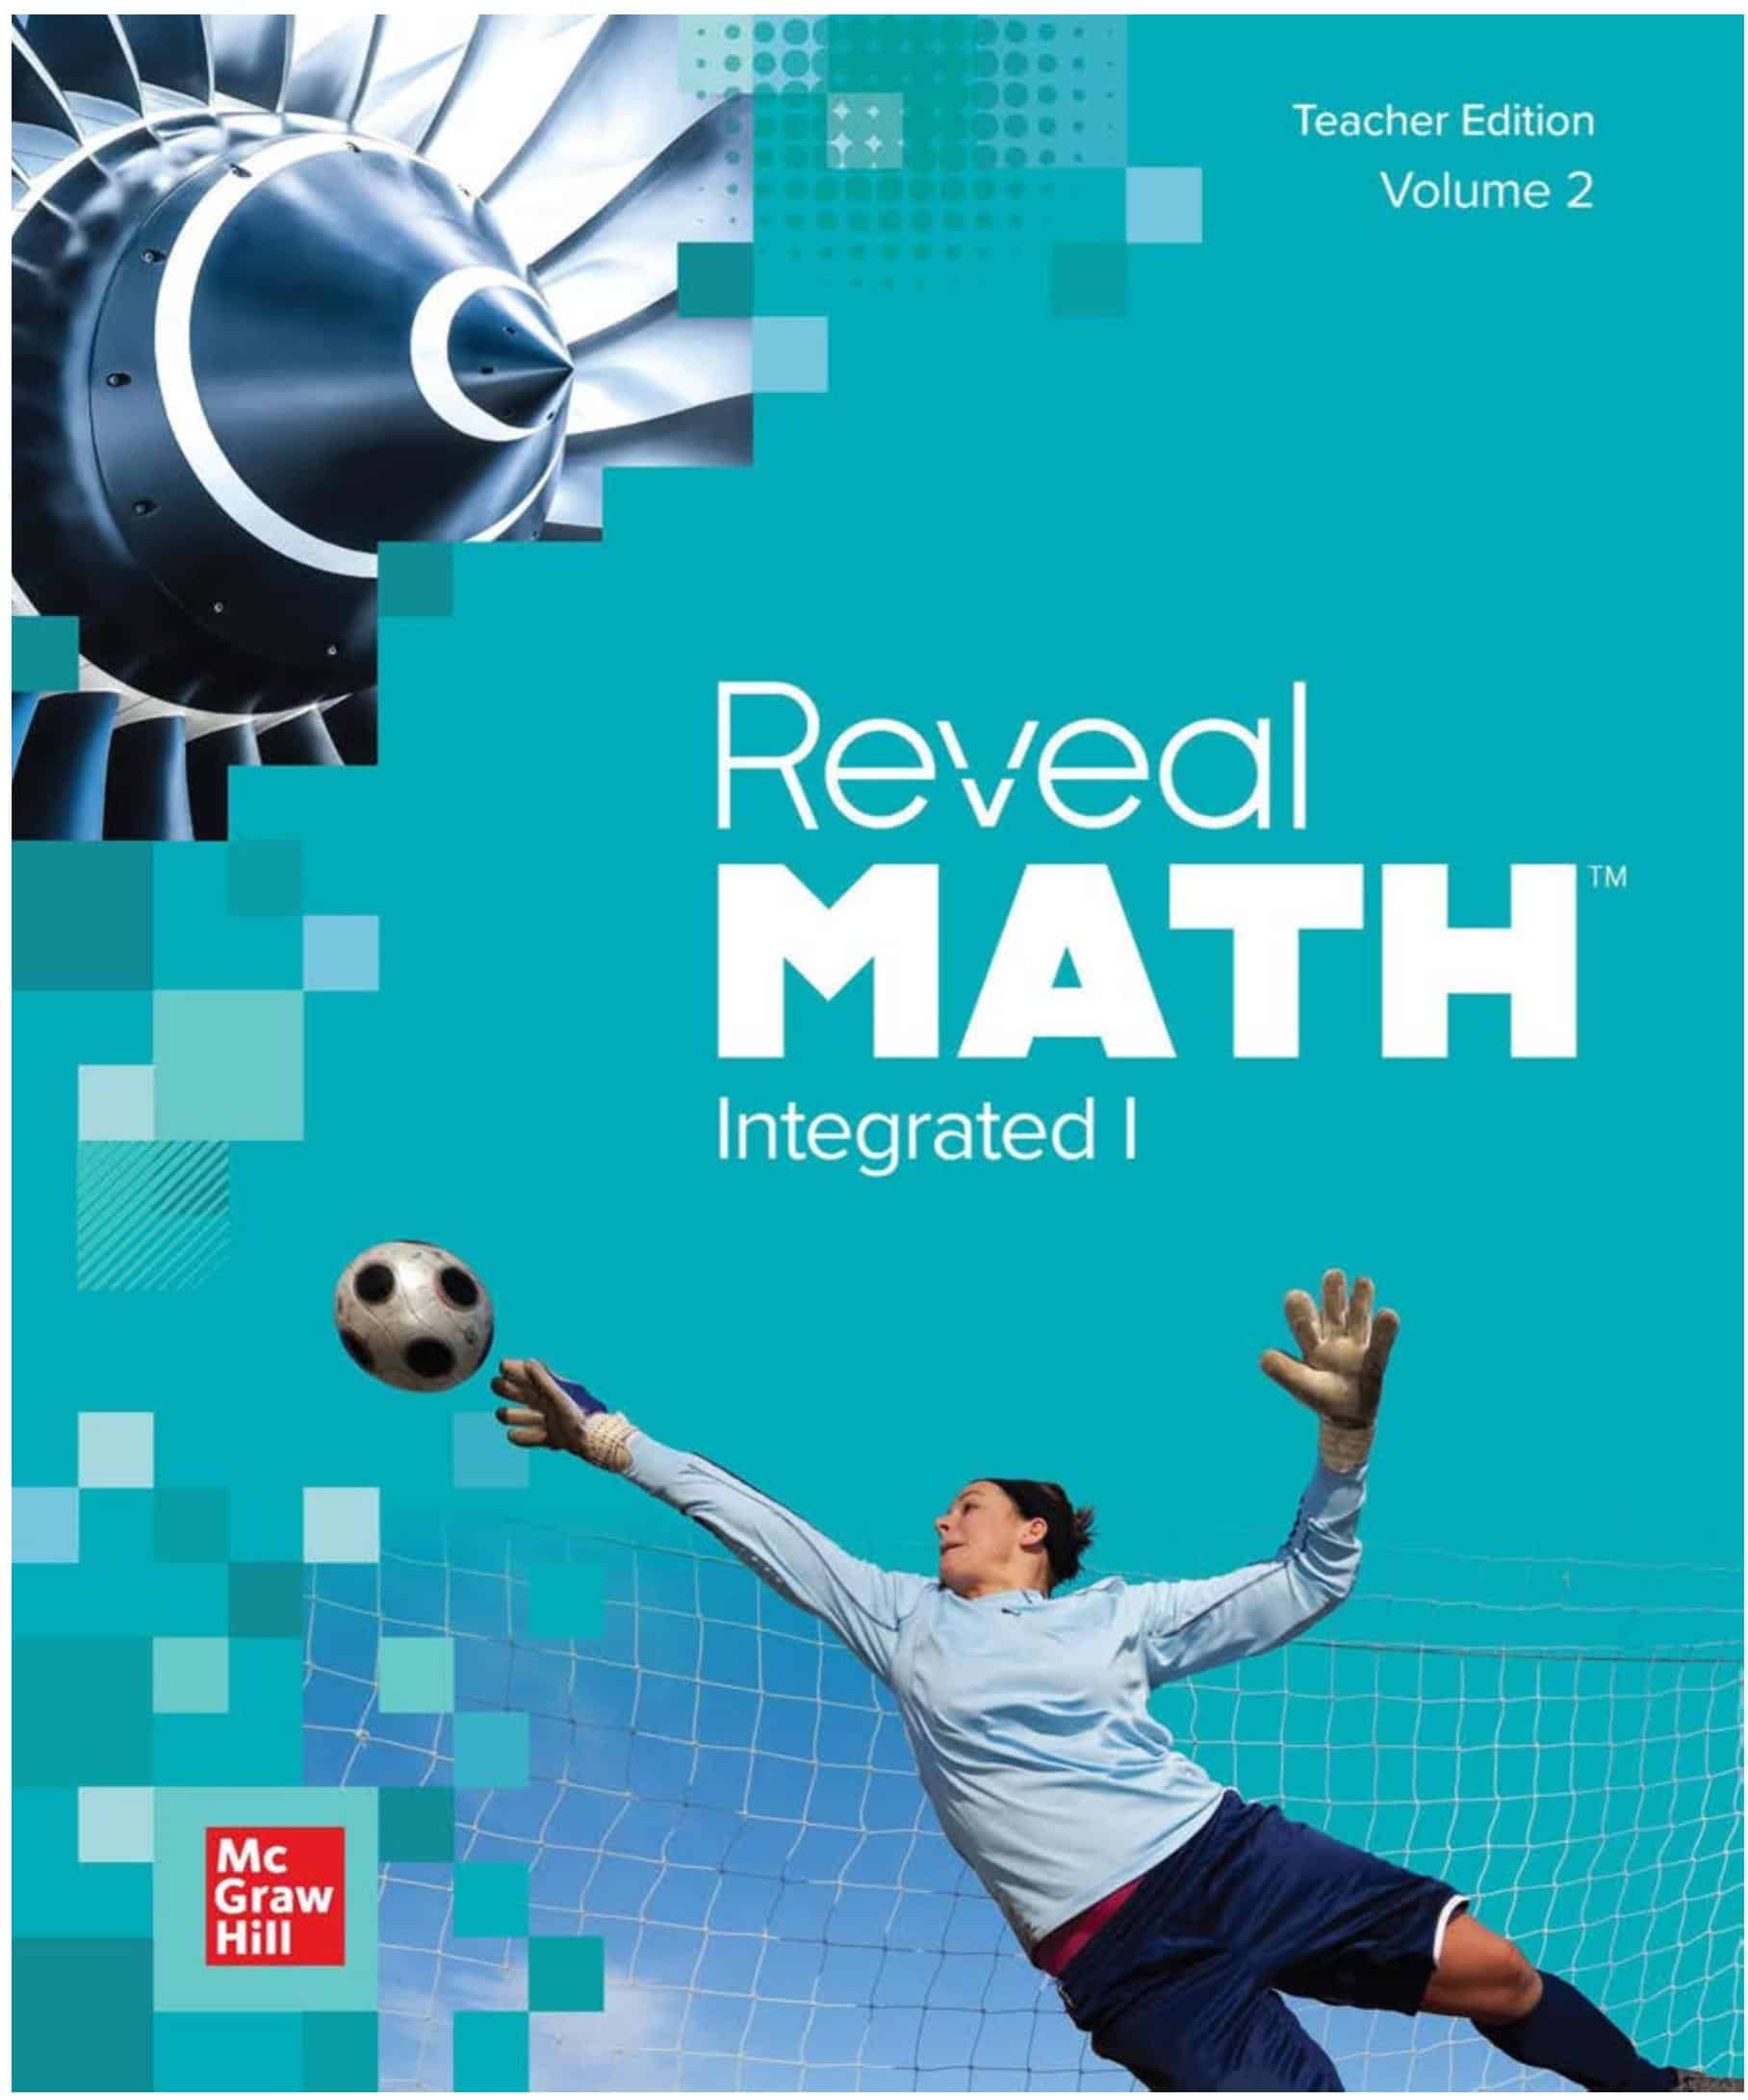 كتاب دليل المعلم Teacher Edition volume 2 الرياضيات المتكاملة الصف الثامن الفصل الدراسي الأول